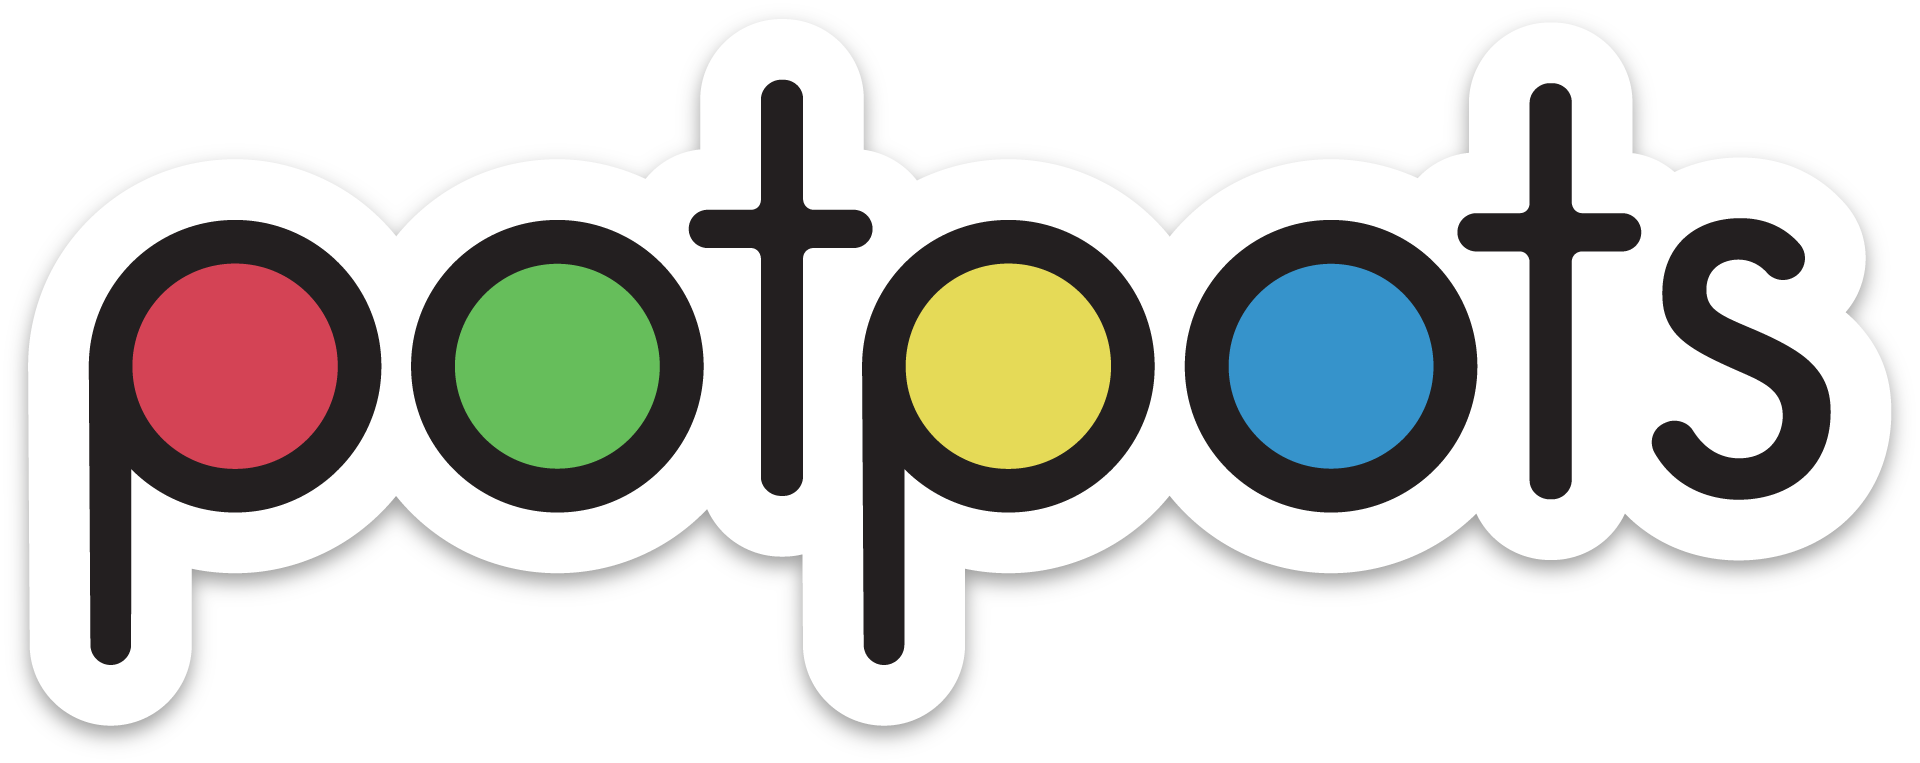 Potpots Logo [No Candy + Sugar]-01